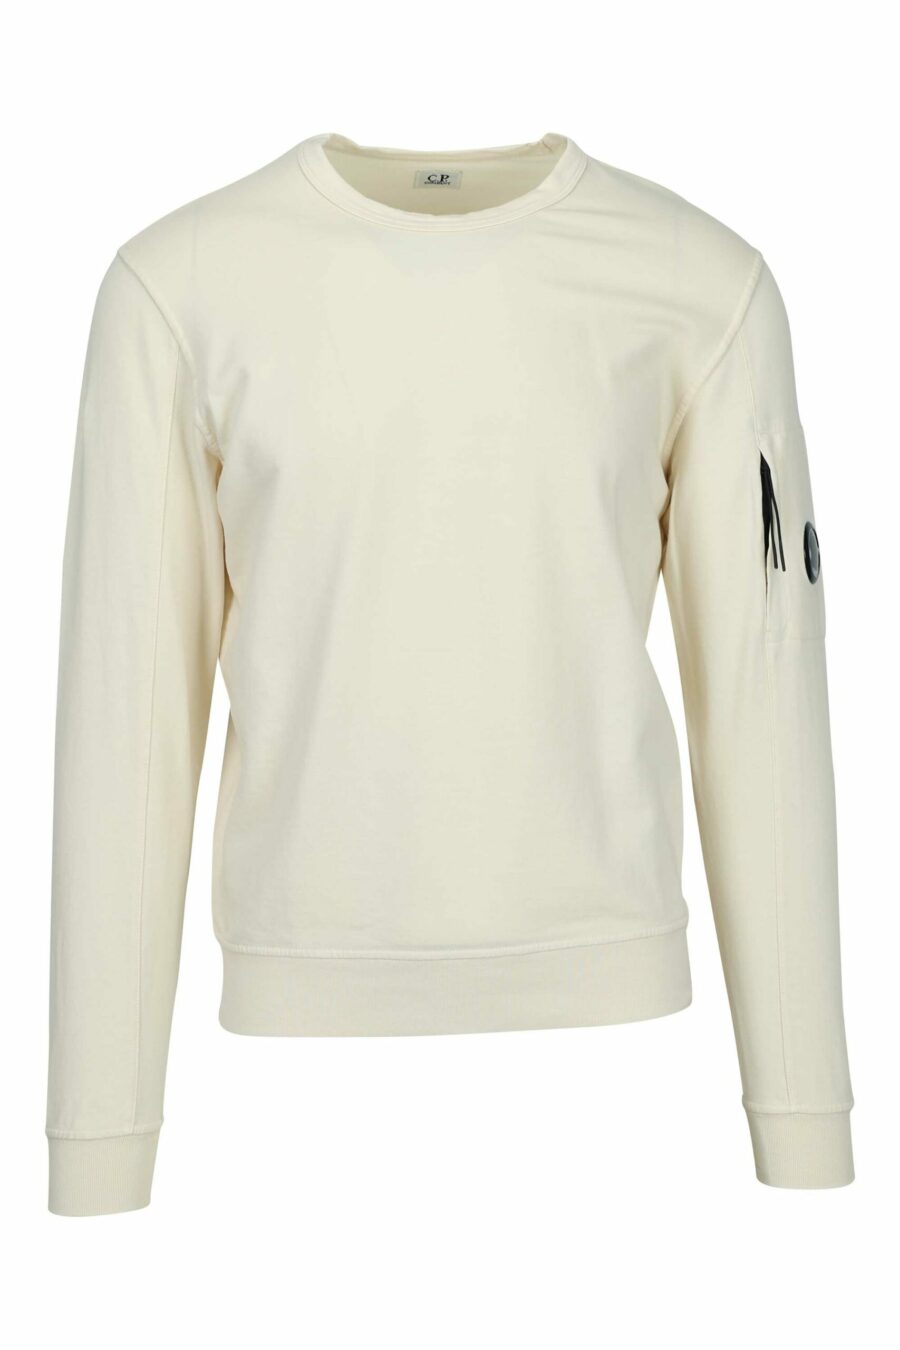 Beigefarbenes Sweatshirt mit Tasche und Mini-Logo-Linse - 7620943680911 skaliert